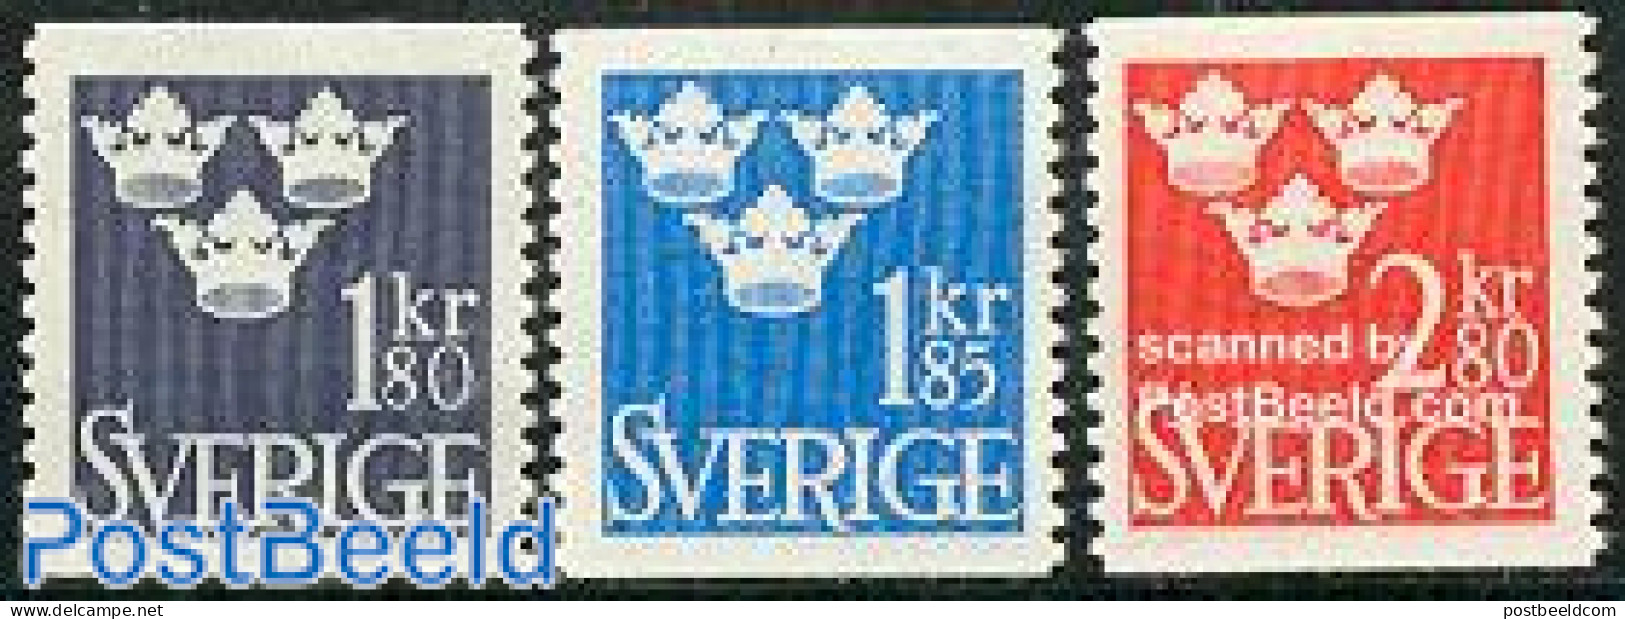 Sweden 1967 Definitives 3v, Mint NH - Neufs